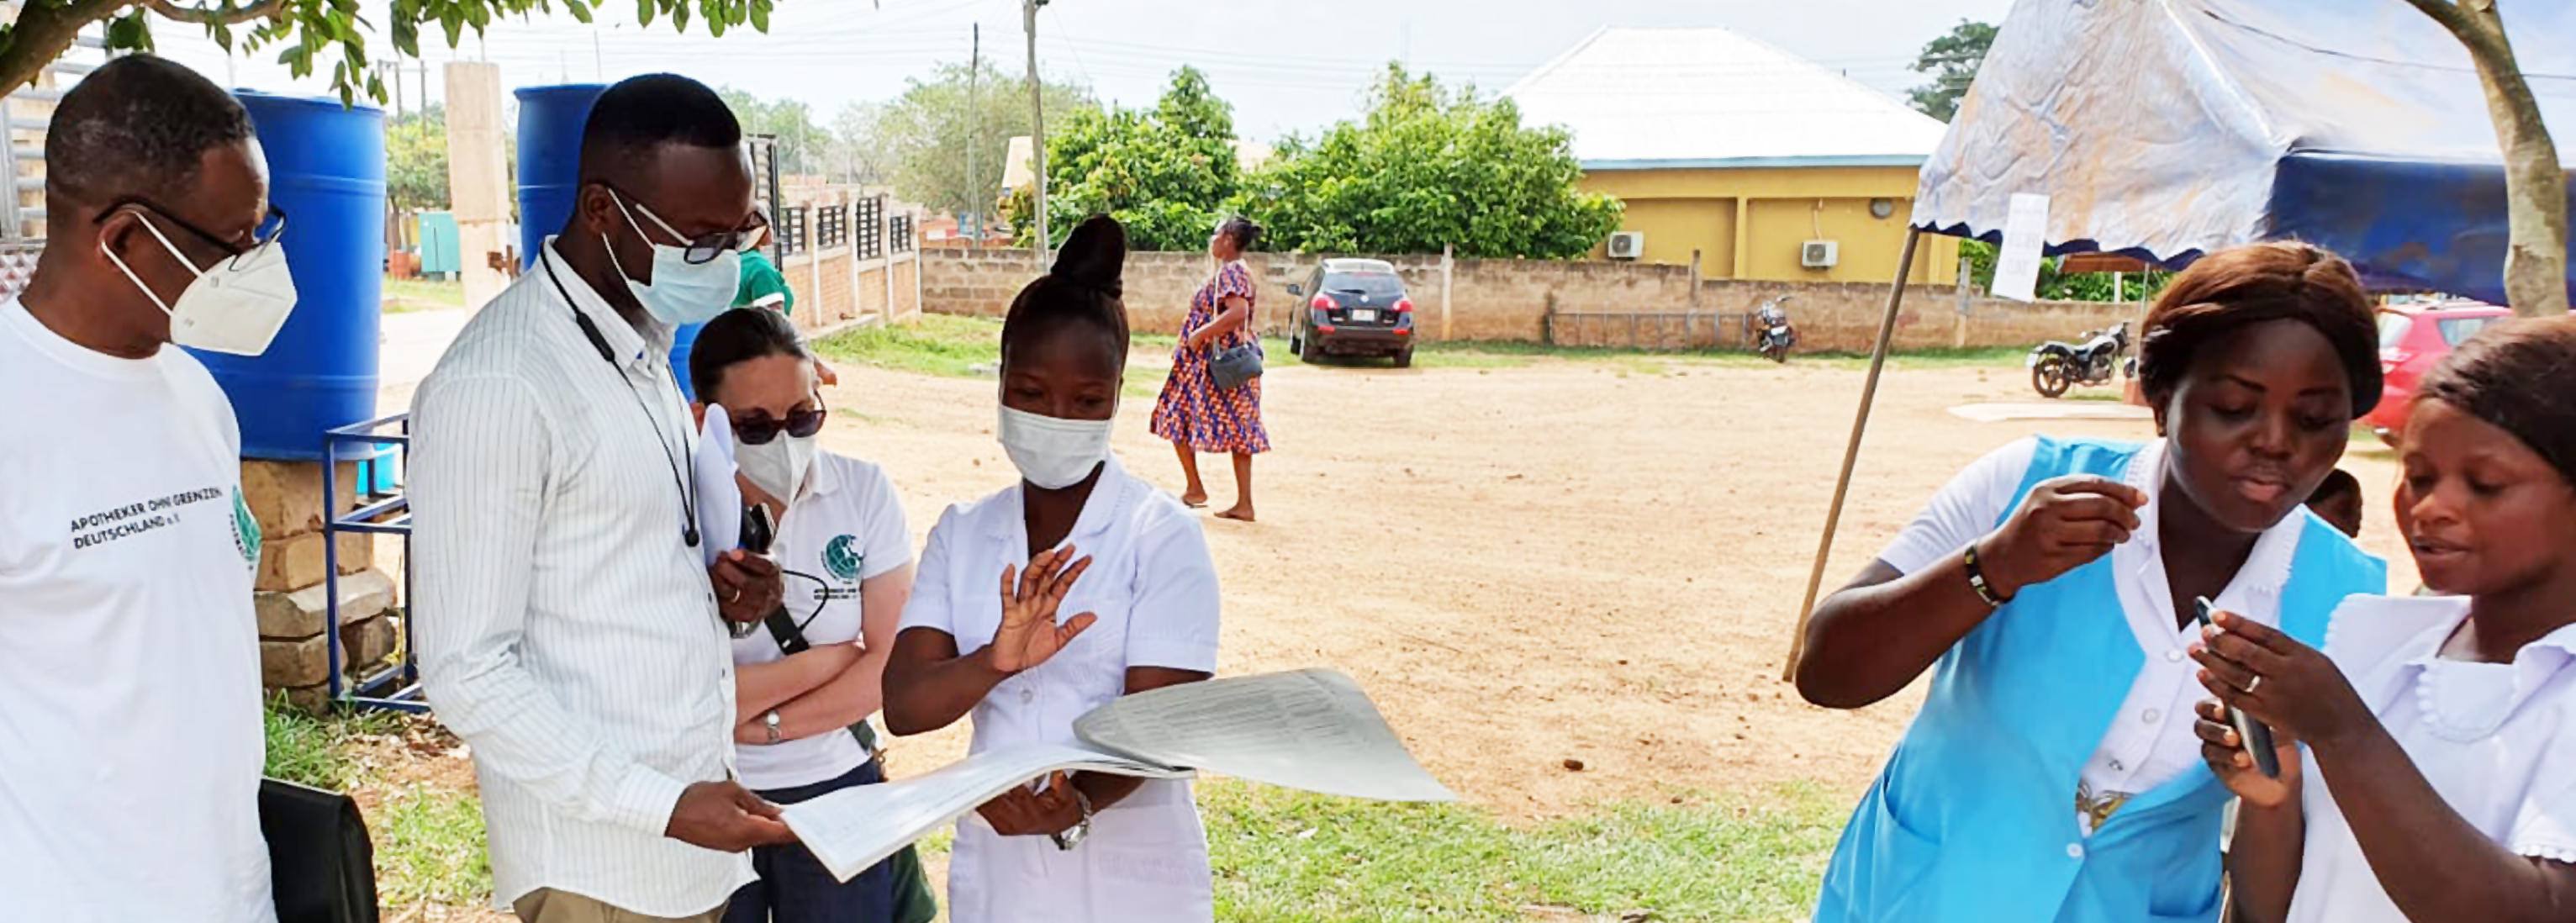 Besuch der Ernährungsberatung durchgeführt von geschultem Gesundheitspersonal des St. Mary’s Hospital (Drobo) durch AoG-Ehrenamtliche Abraham Dzidonu und Ursula Neideck